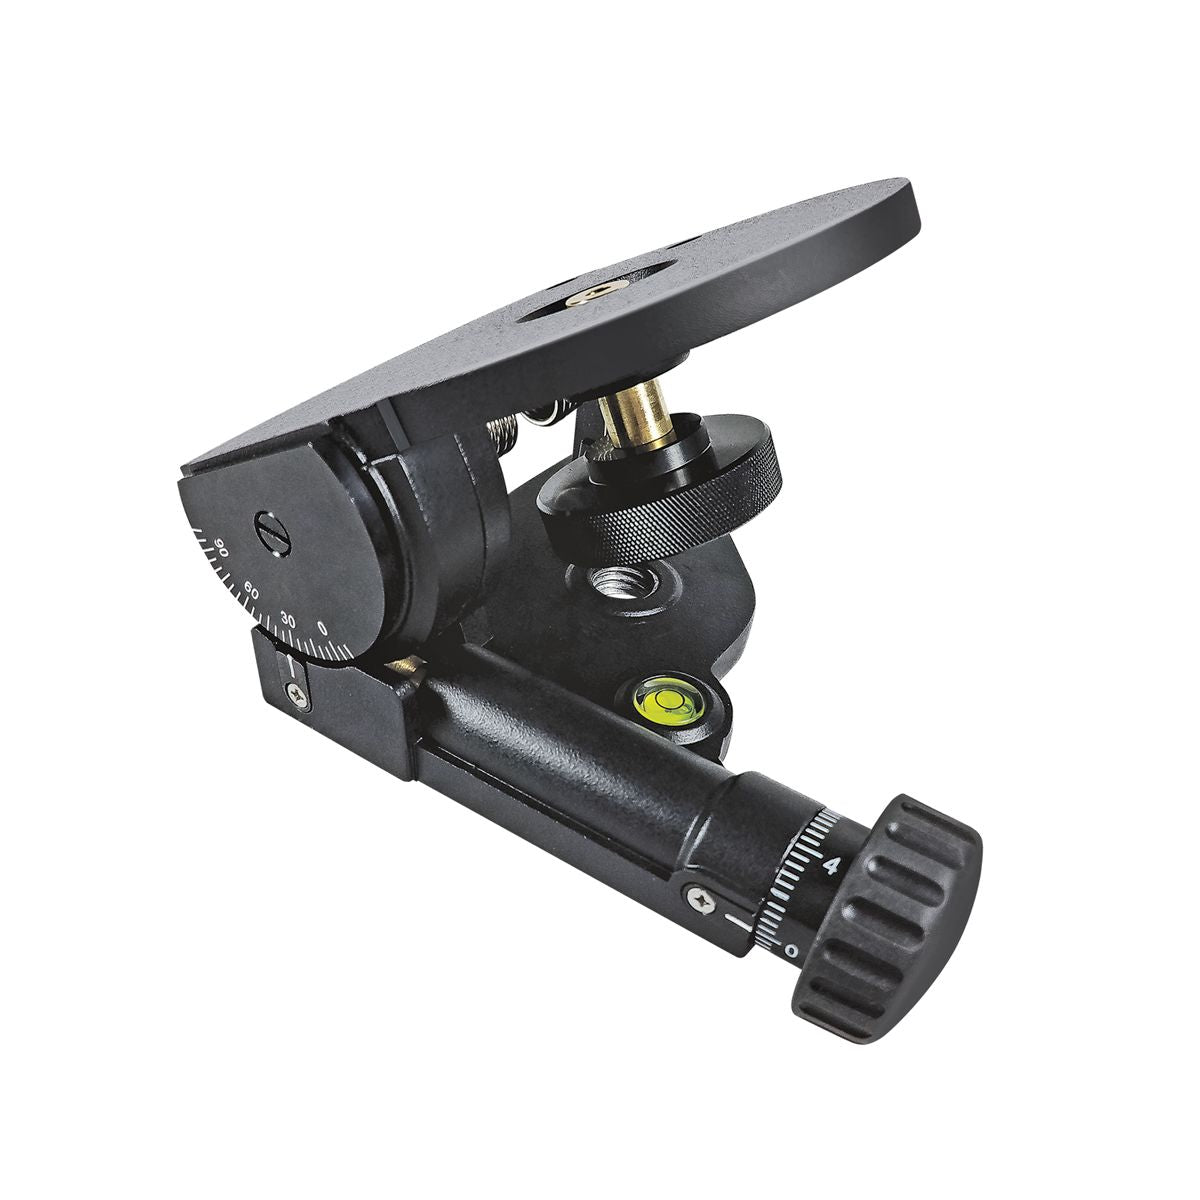 Sitepro 27-LGA Laser Grade Adapter for Measuring Tools